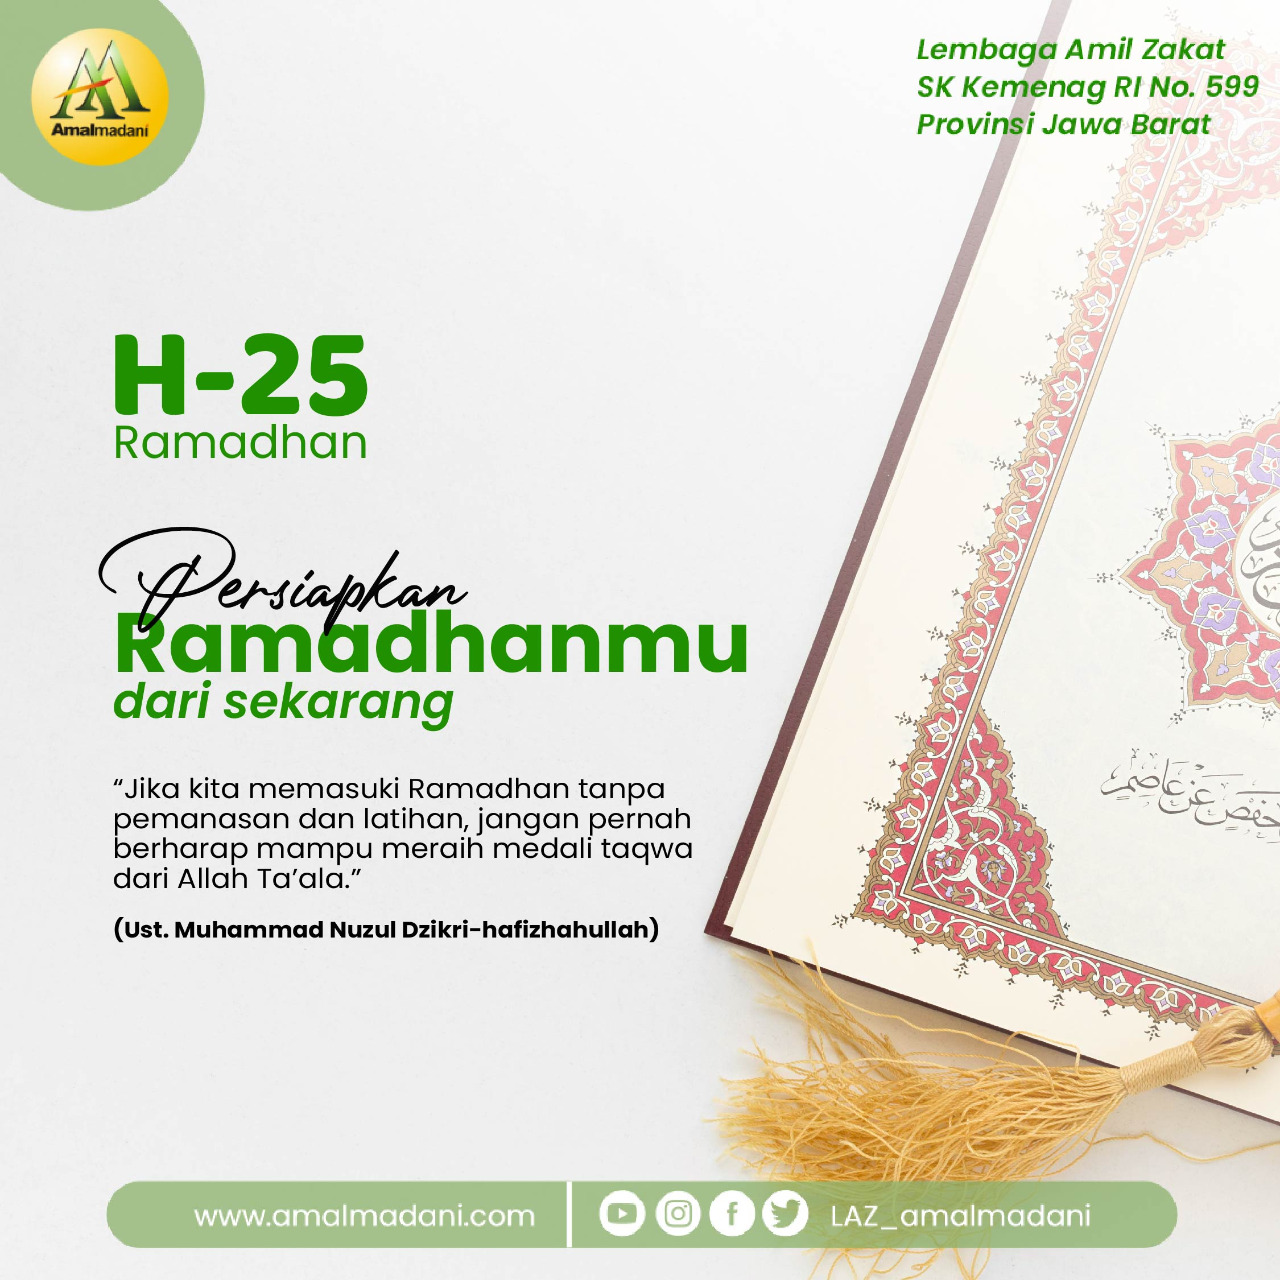 H-25 Ramadhan: Persiapkan Ramadhanmu dari Sekarang!